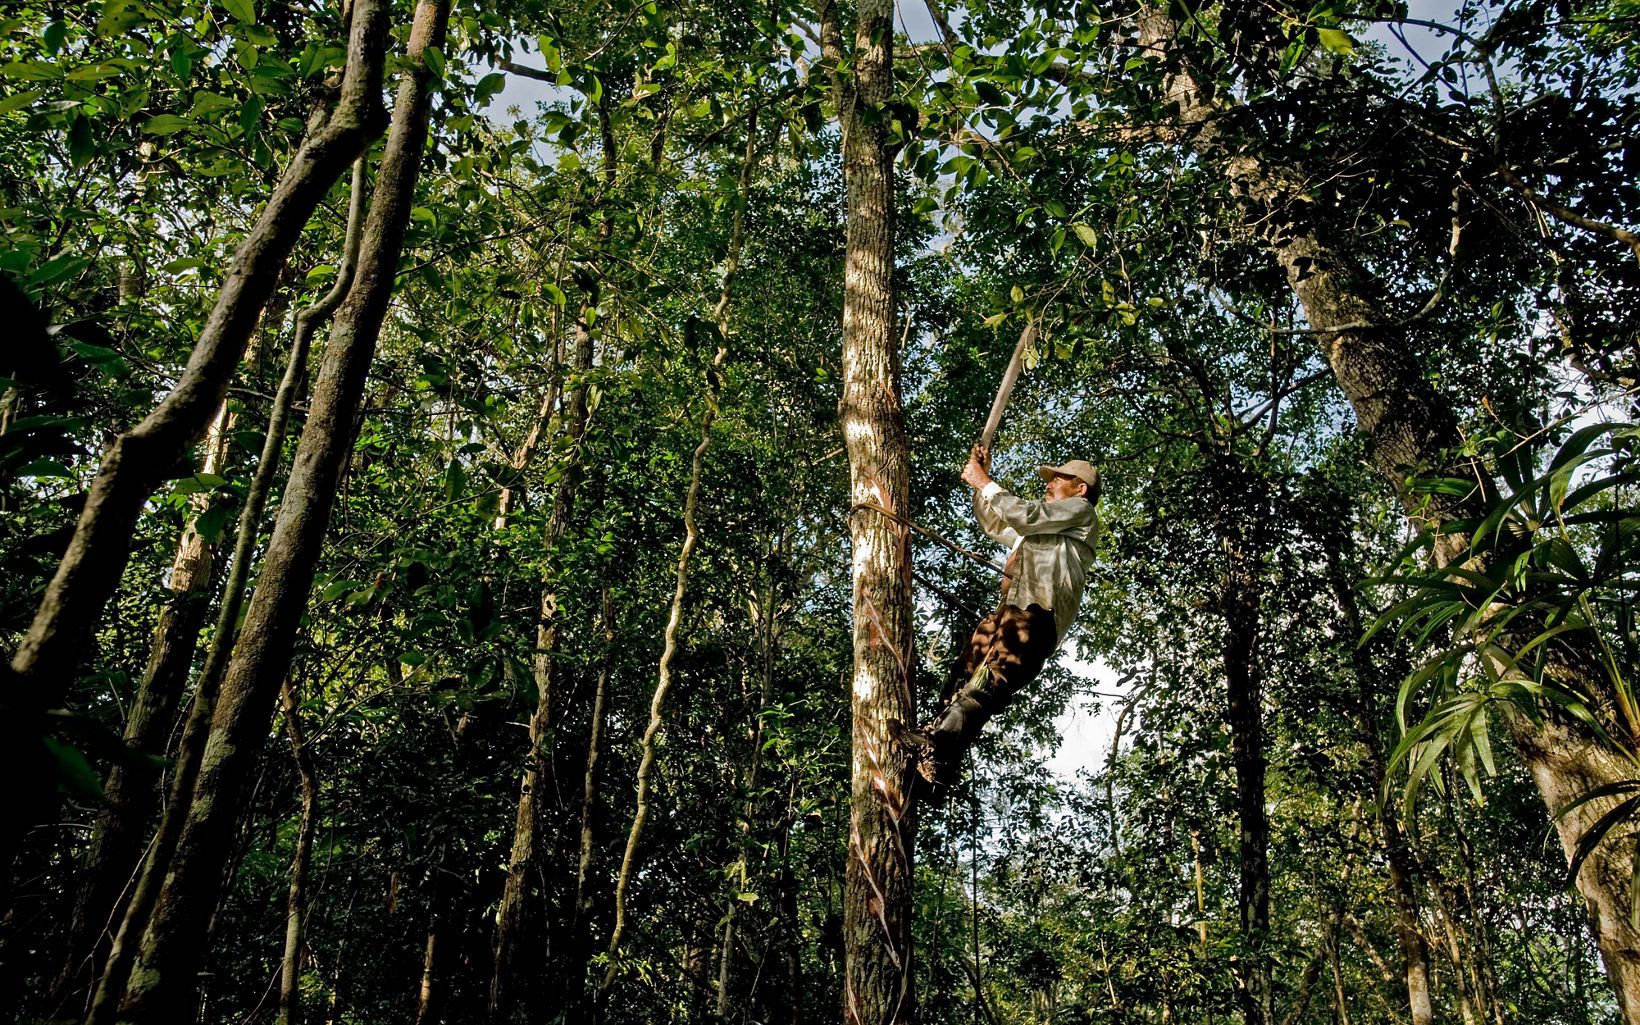  Elias Cahuich, a chiclero  taps the Sapodilla (Manilkara zapotain) trees for the white, gummy latex called chicle in the forest near the ejido Veinte de Noviembre.  © Ami Vitale